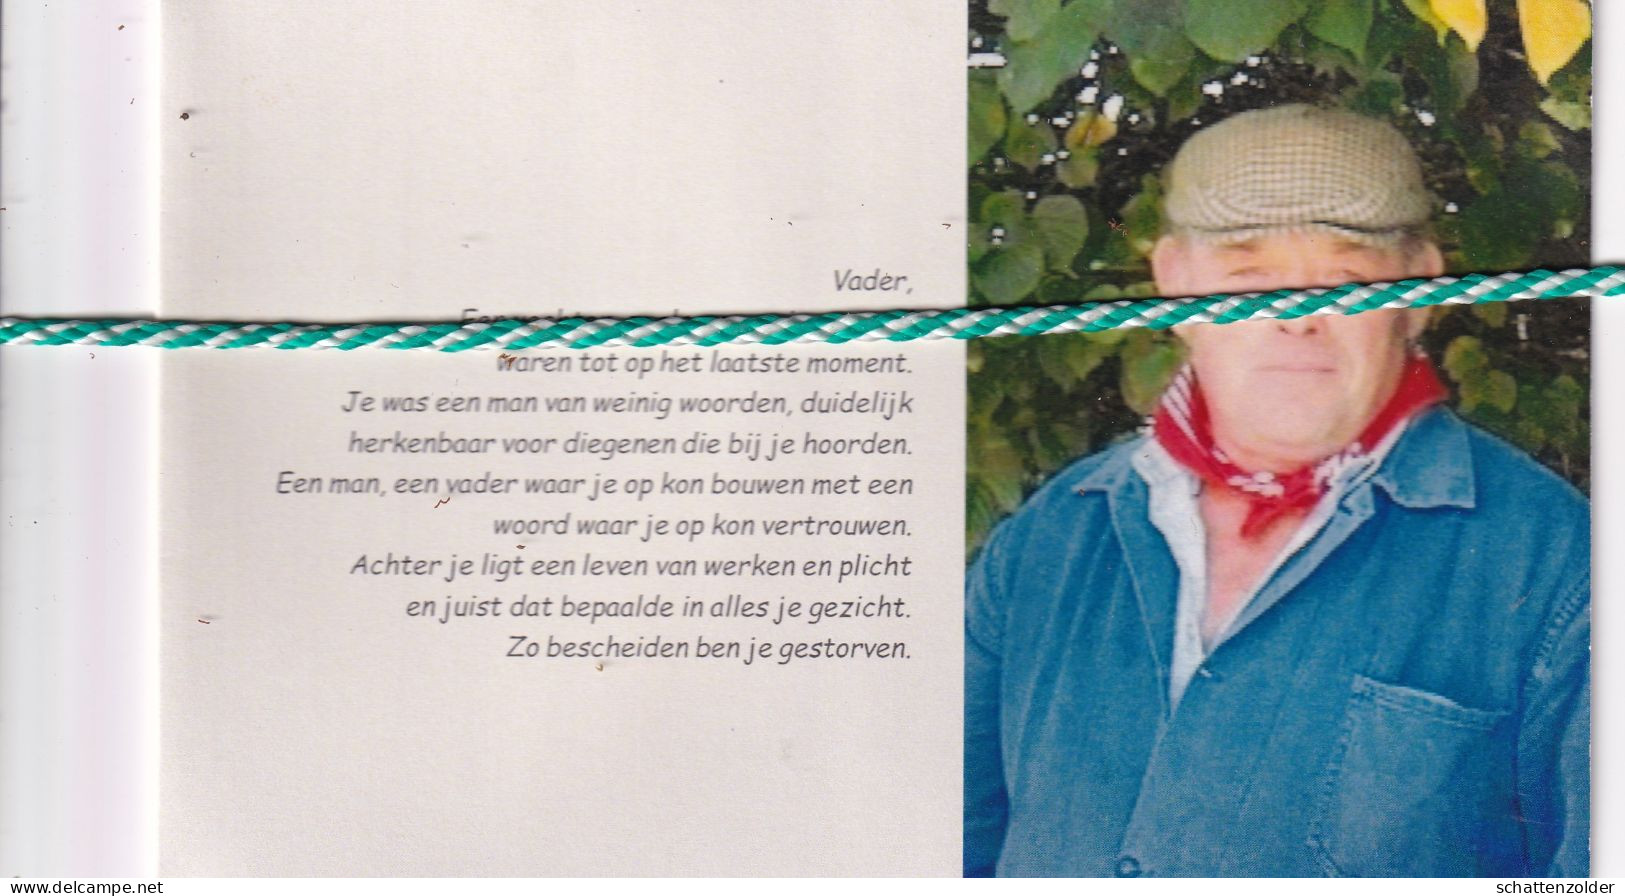 Norbert Redant-Van Den Bossche, Aalst 1951, Gent 2021. Foto - Obituary Notices